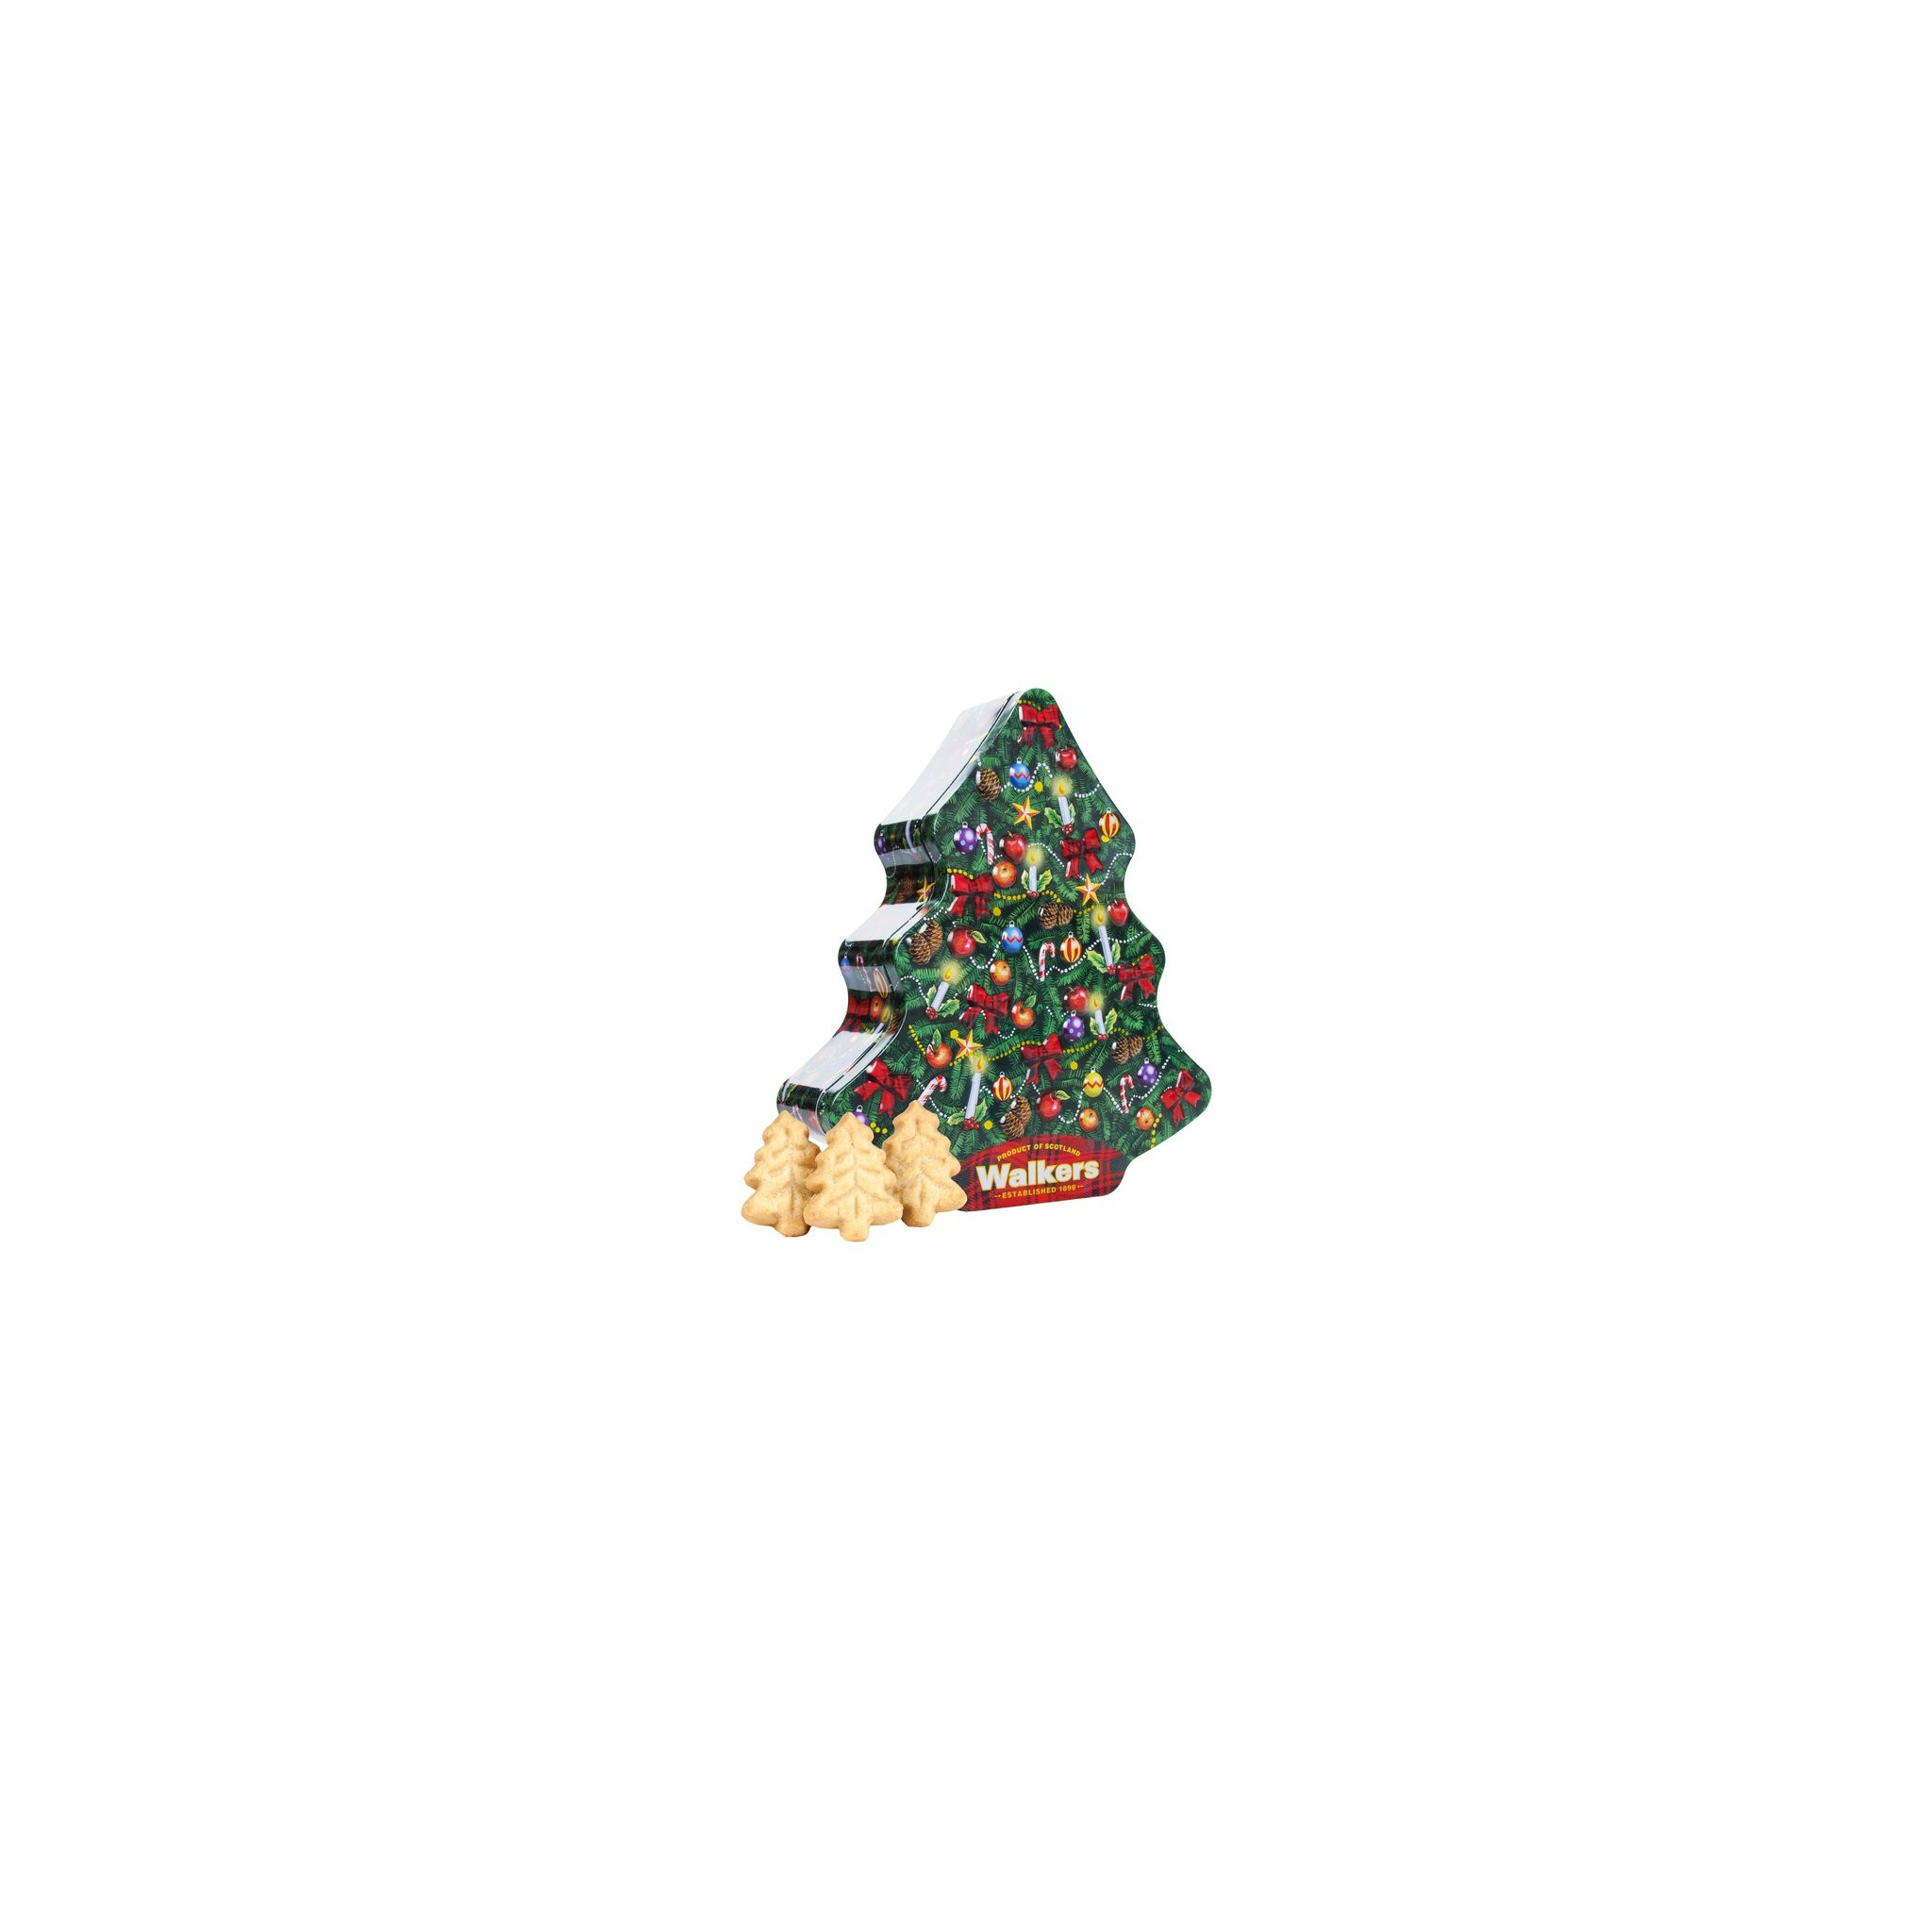 Biscotti Di Natale Vendita.Vendita Online Walkers A Forma Di Albero Di Natale Biscotti Scozzesi Al Burro In Confezioni Regalo Christmas Tree